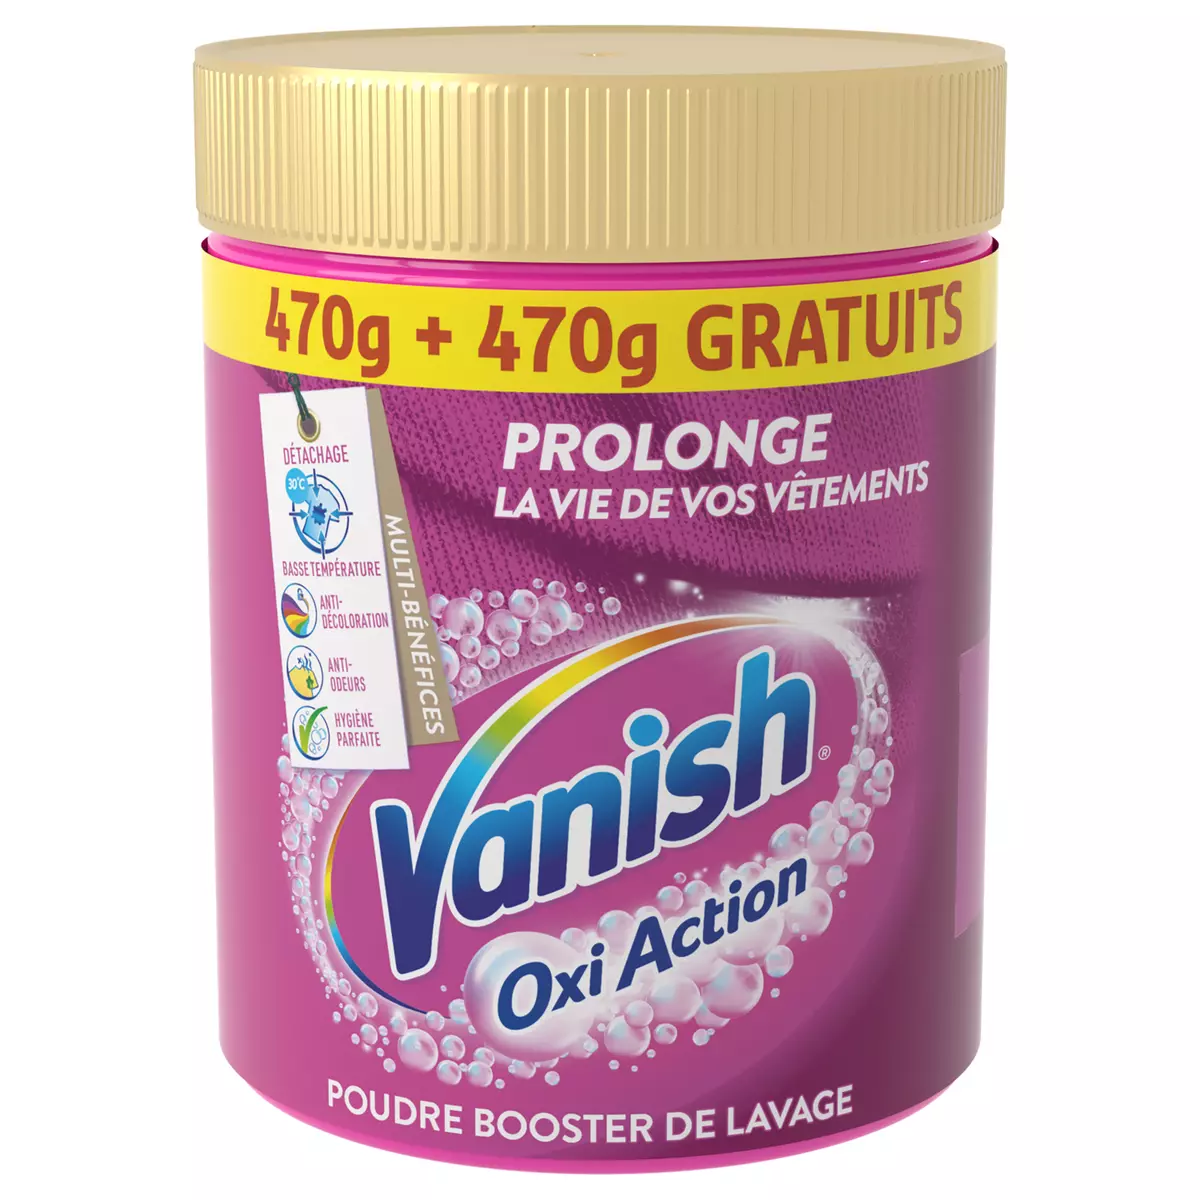 VANISH Oxi Action poudre booster de lavage 470g+470g offert